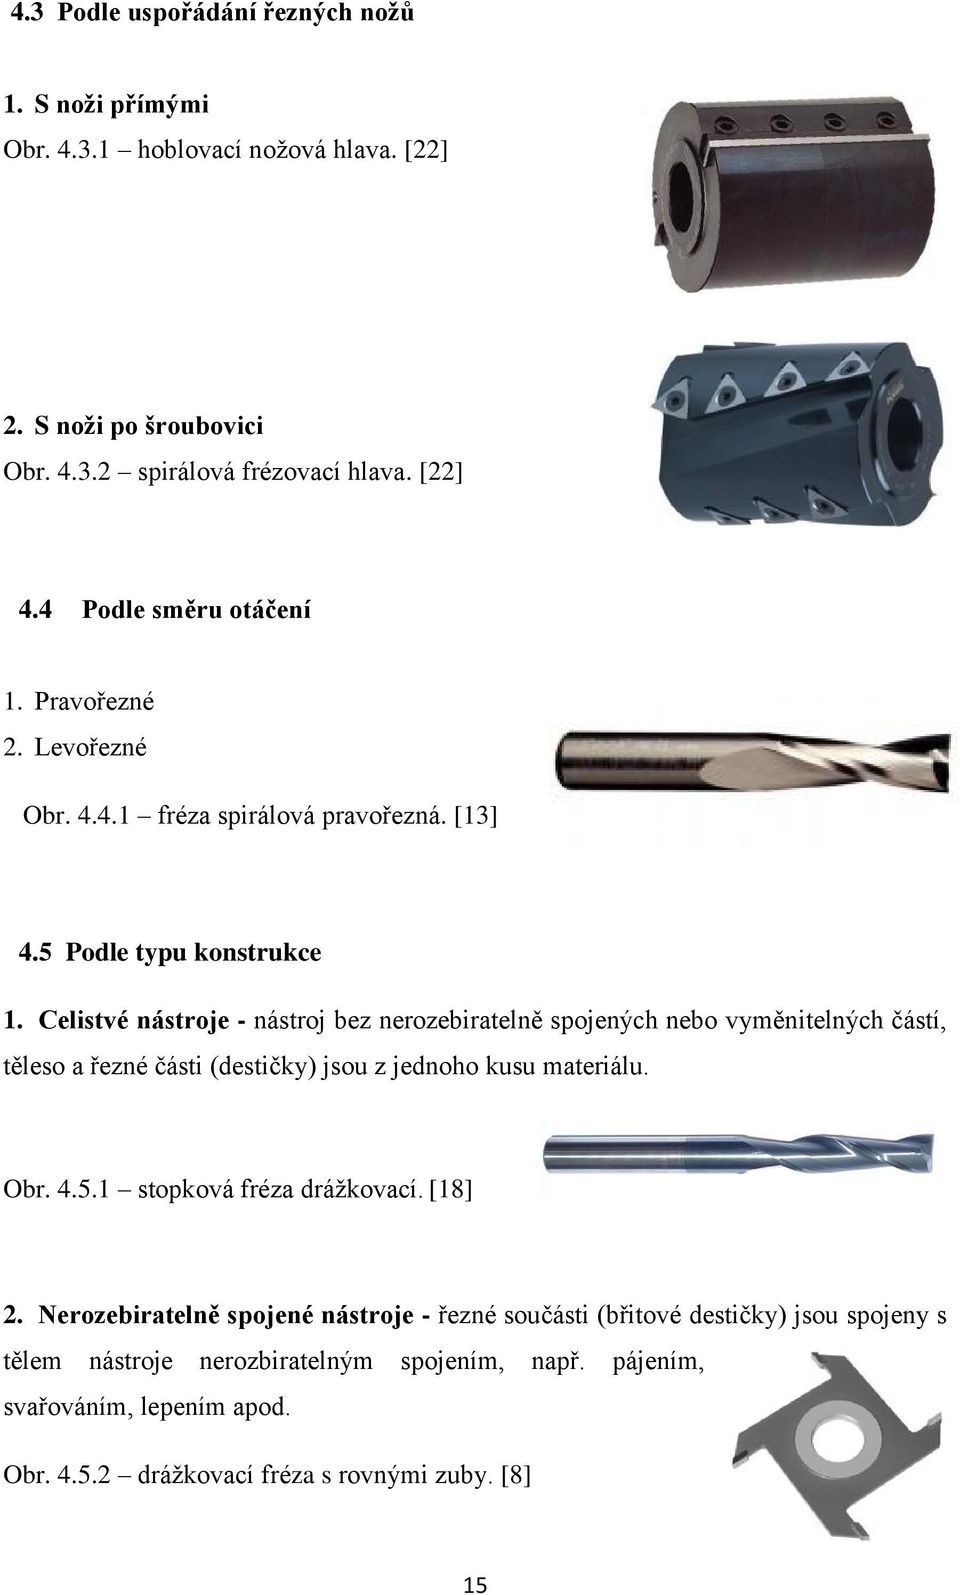 Celistvé nástroje - nástroj bez nerozebiratelně spojených nebo vyměnitelných částí, těleso a řezné části (destičky) jsou z jednoho kusu materiálu. Obr. 4.5.